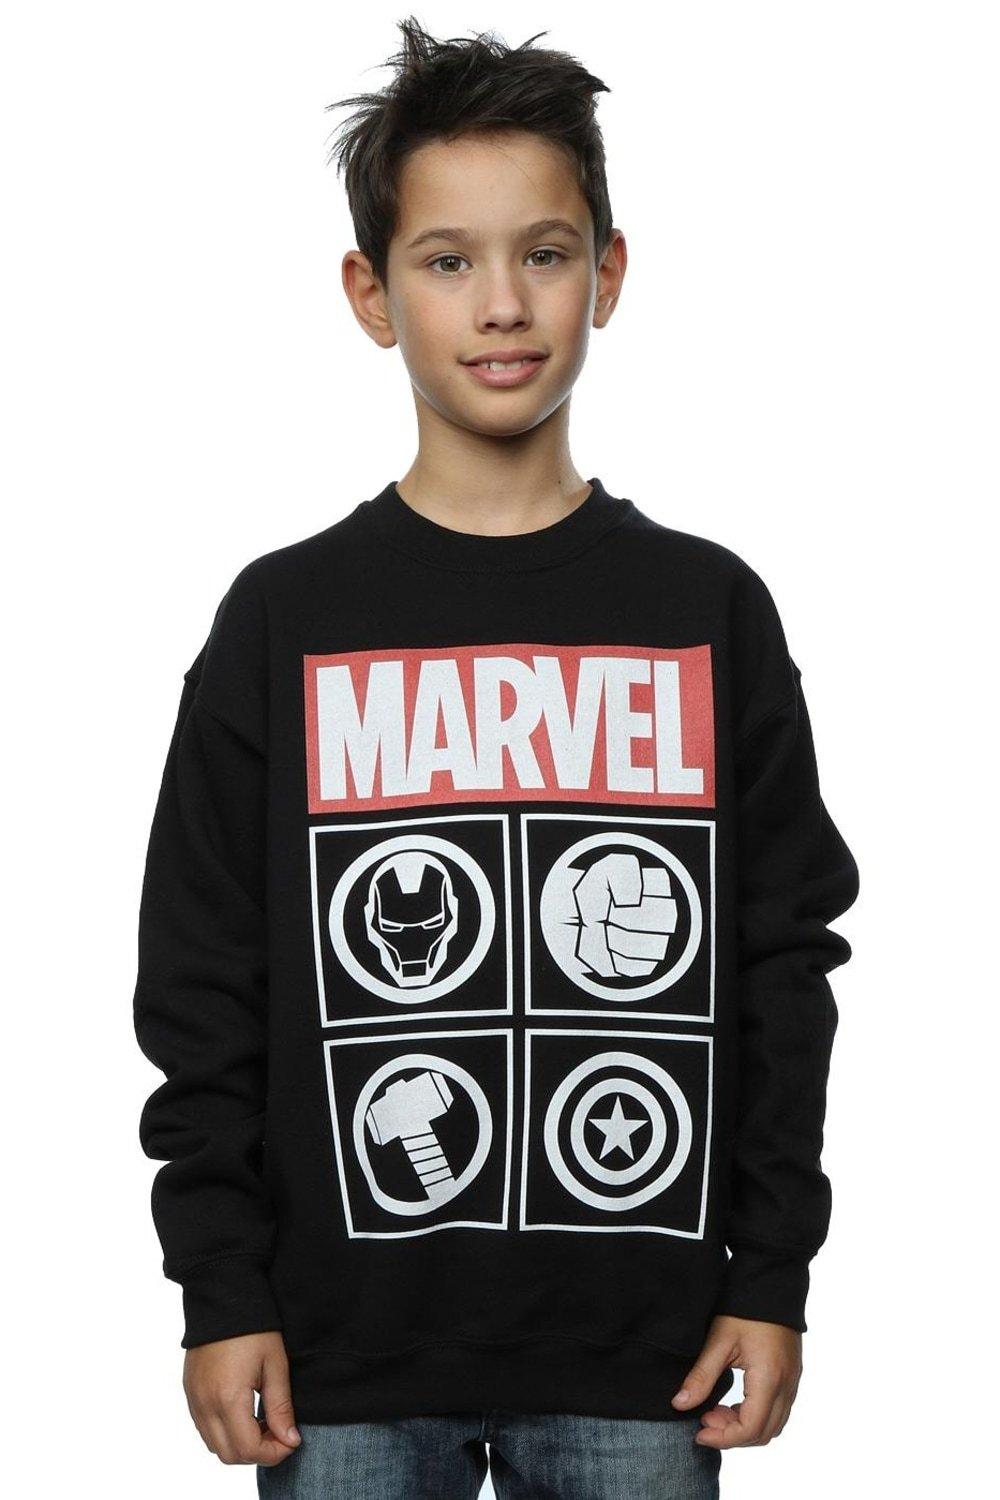 Avengers Icons Sweatshirt